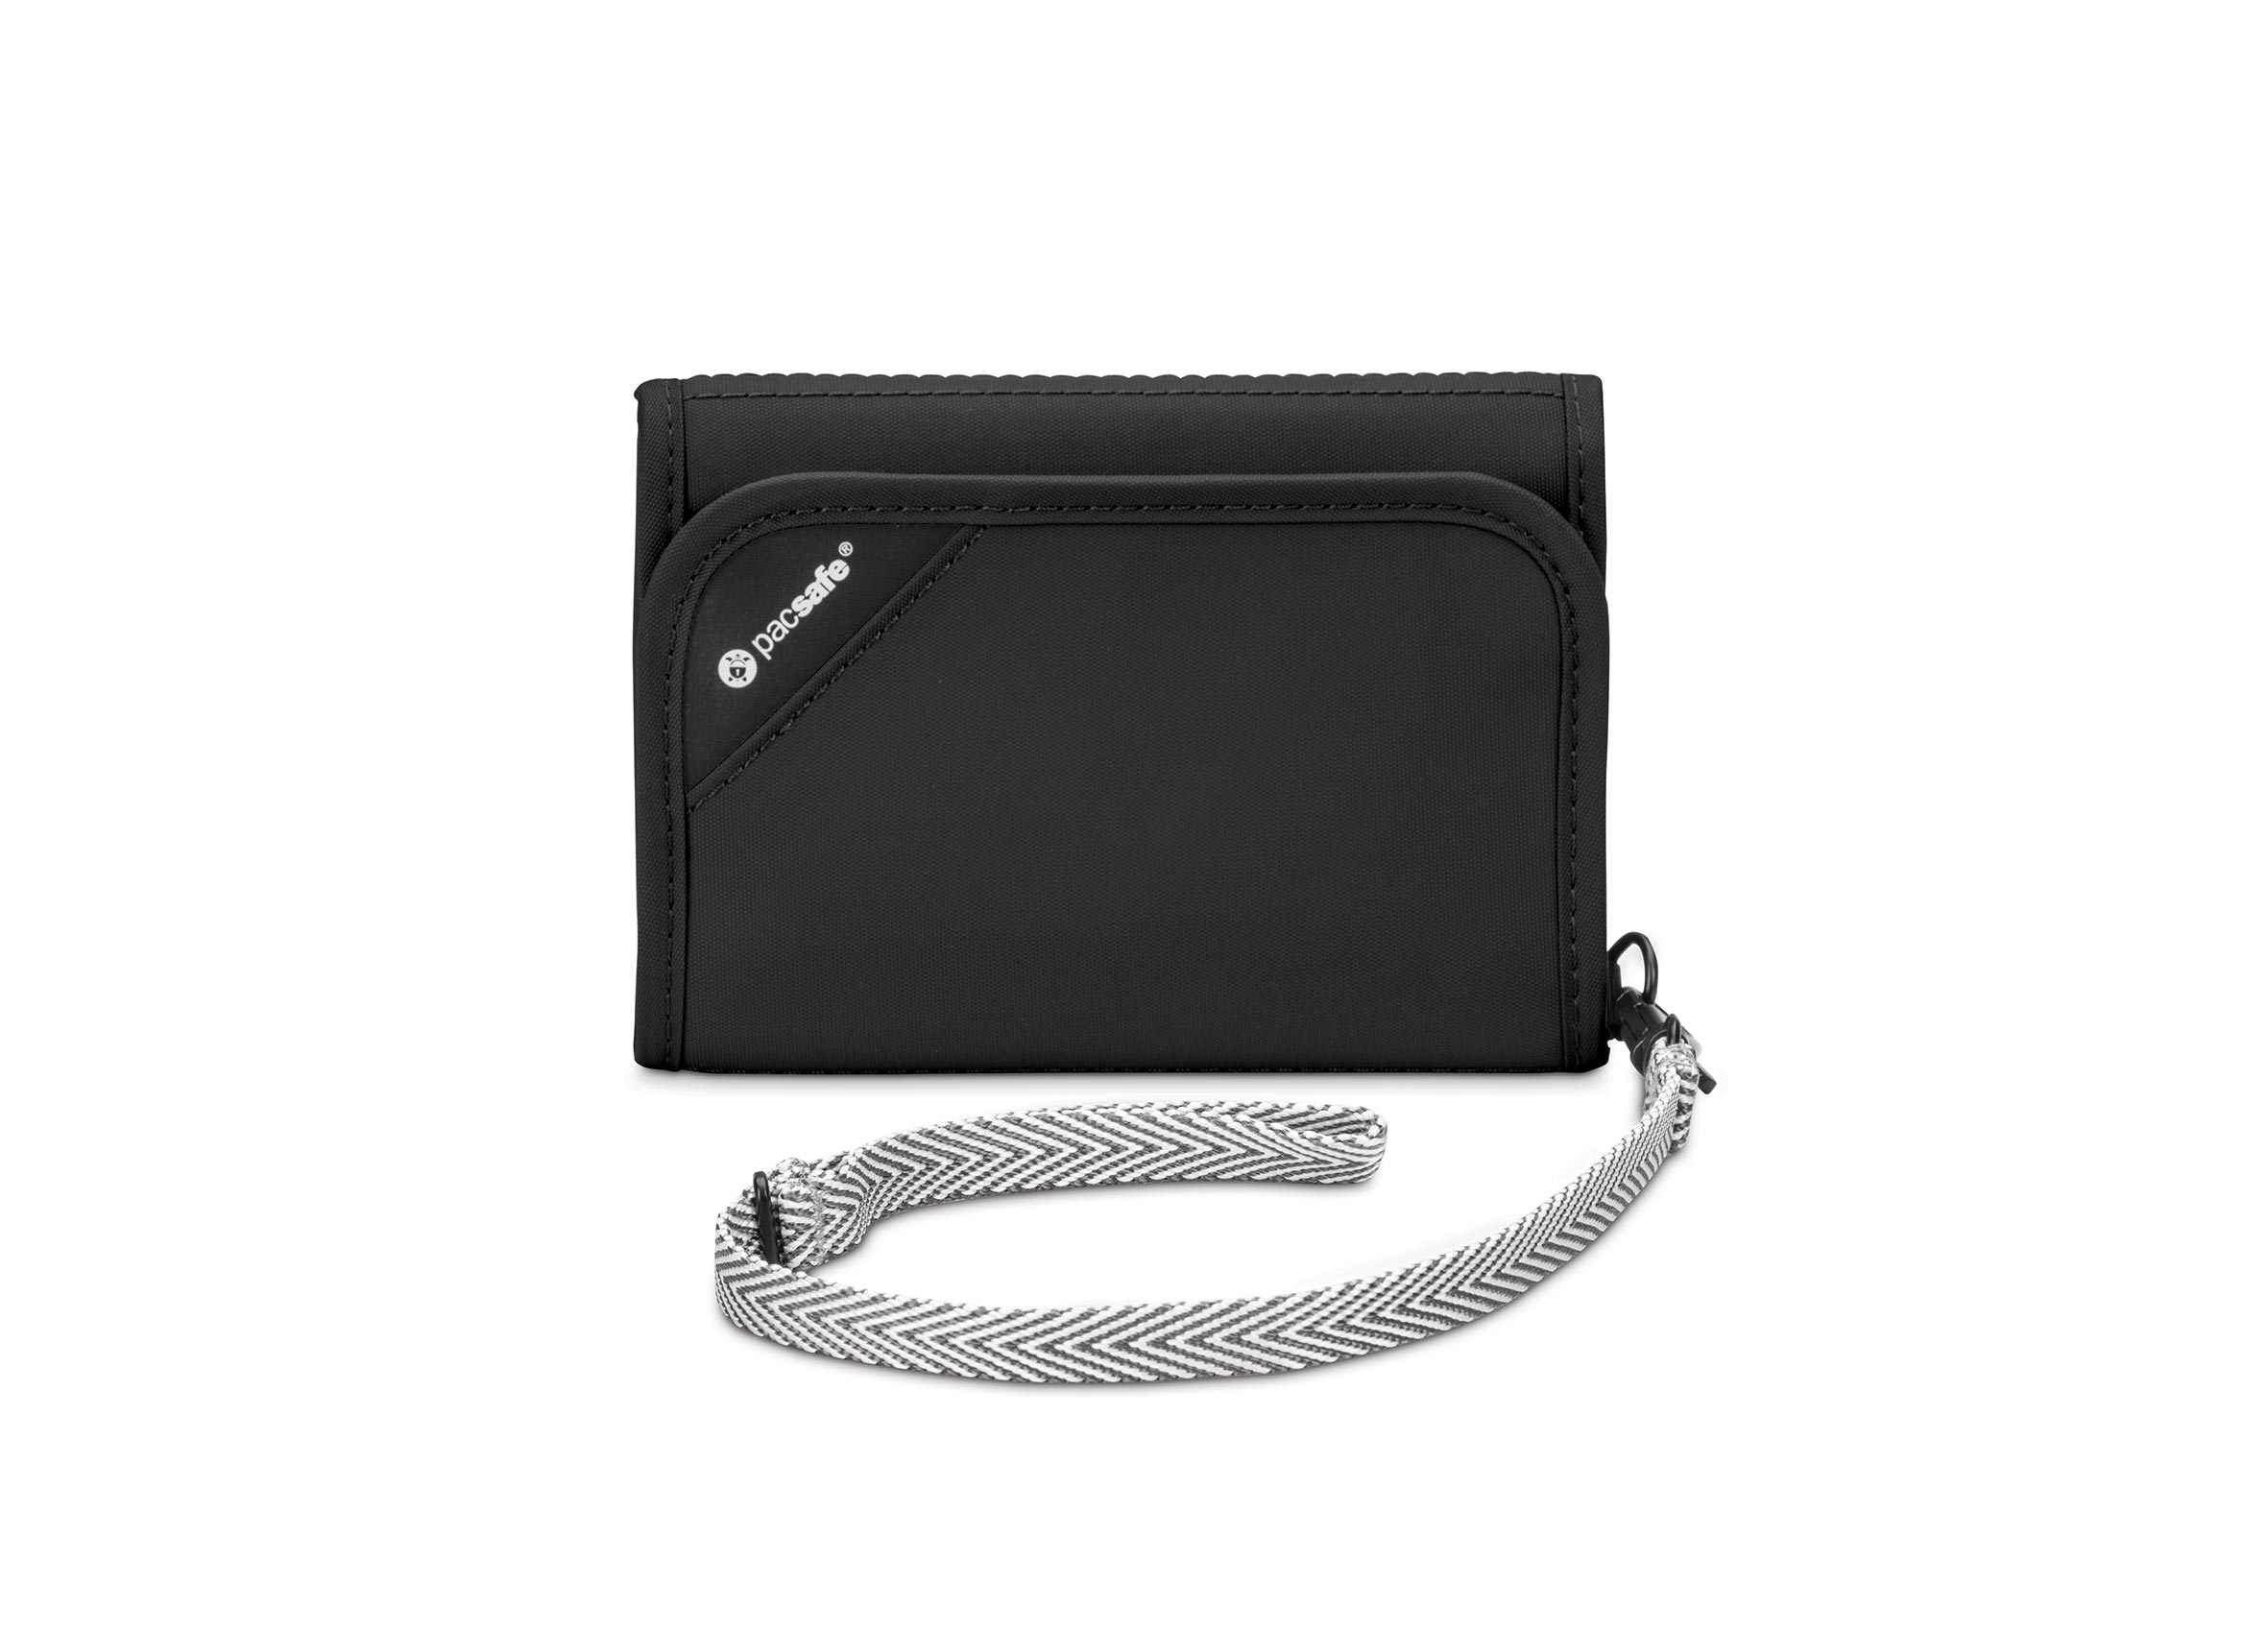 Pacsafe - RFIDsafe V125 trifold Wallet - Black